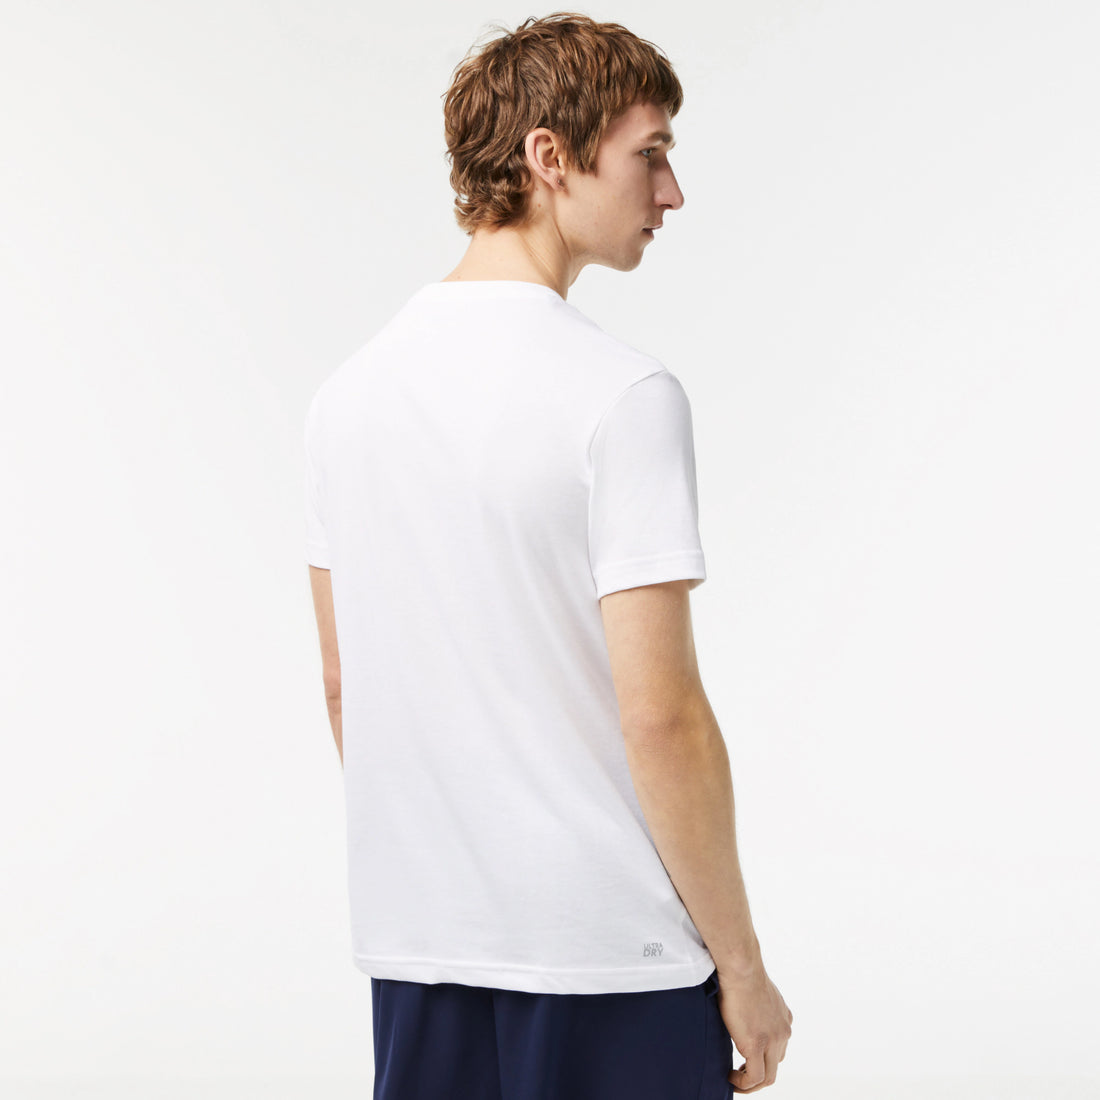 Lacoste TH2042-51 Men's Croc Jersey T-shirt [White/Blue]